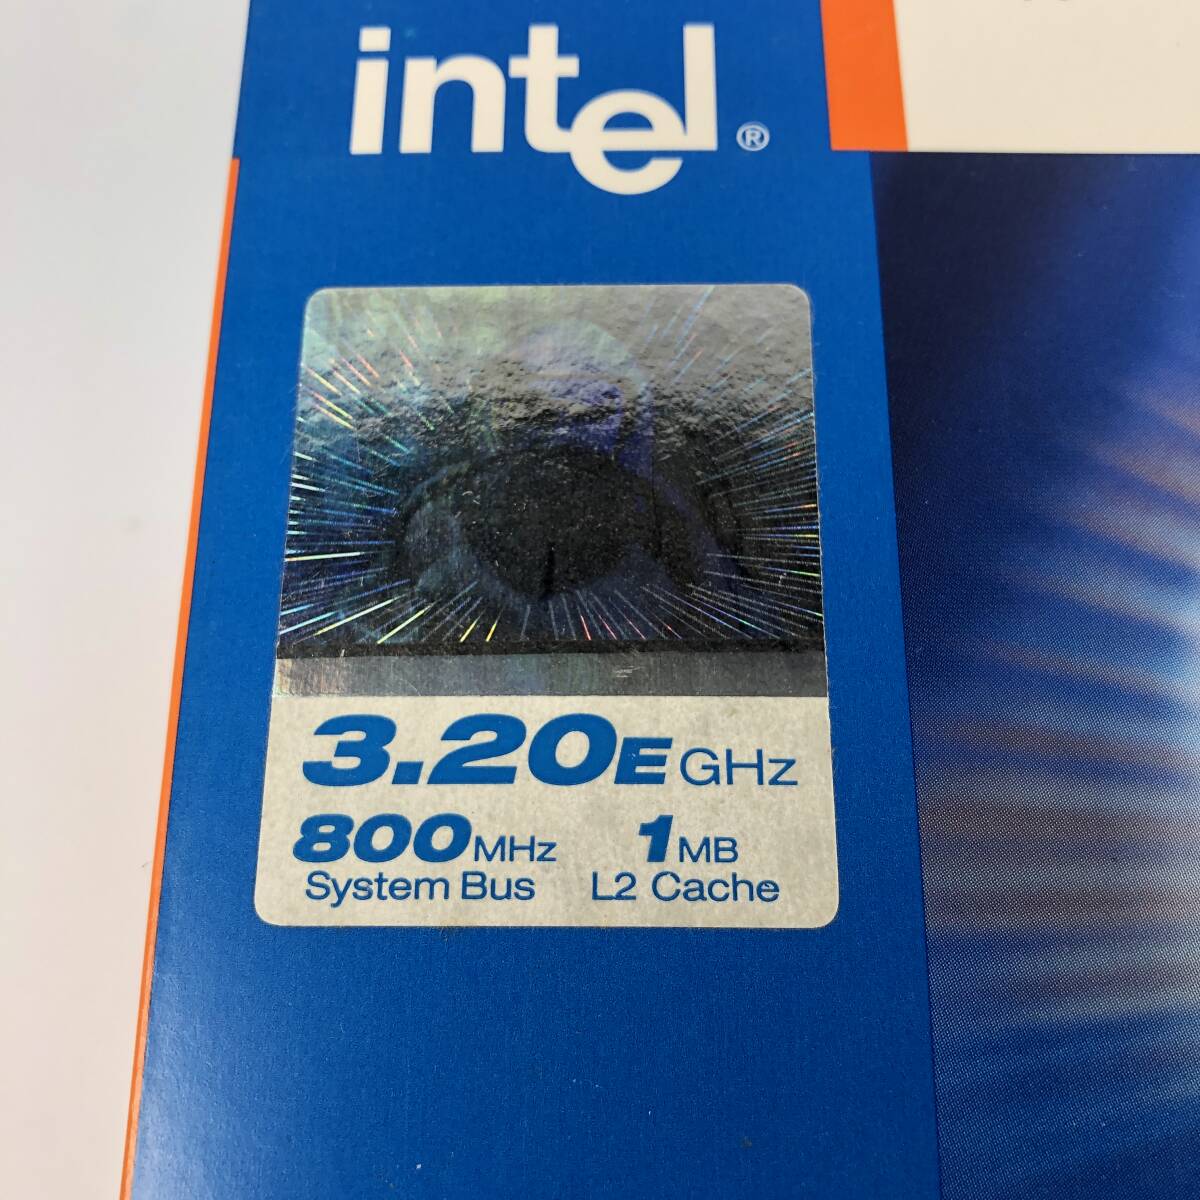 未開封 Intel Pentium4 3.20EGHz Socket478 CPU リテールBOX マレーシアの画像5